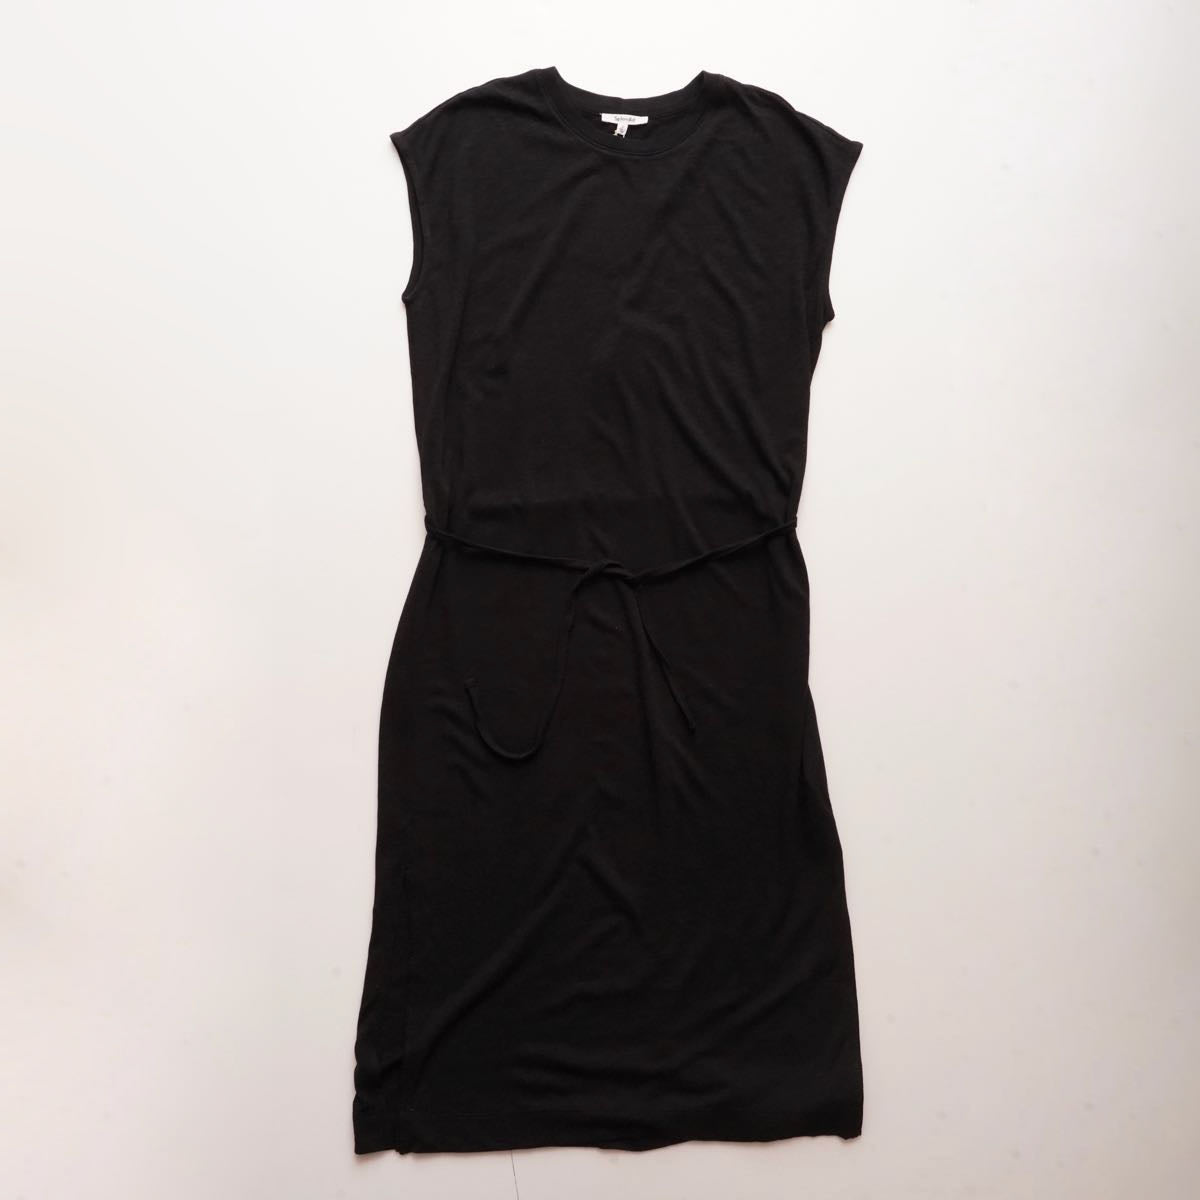 スプレンディッド  ブラック フレンチスリーブ ロングドレス ワンピース SPLENDID BLACK FRENCH-SLEEVE DRESS WOMENS